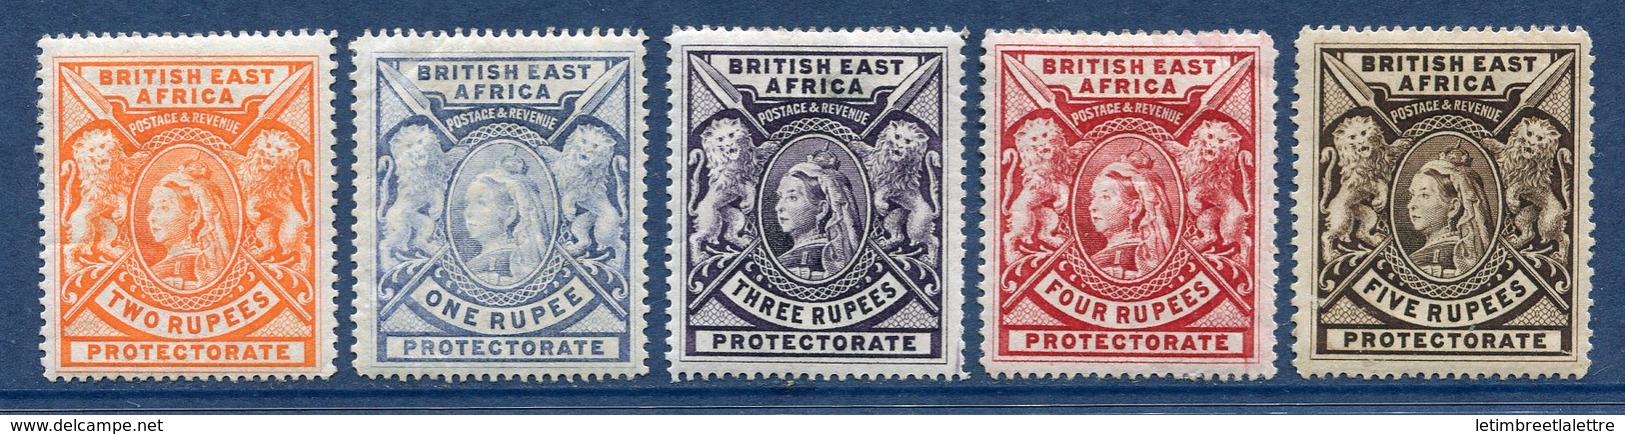 ⭐ Afrique Orientale Britannique - YT N° 76 à 80 * - Neuf Avec Charnière ⭐ - British East Africa